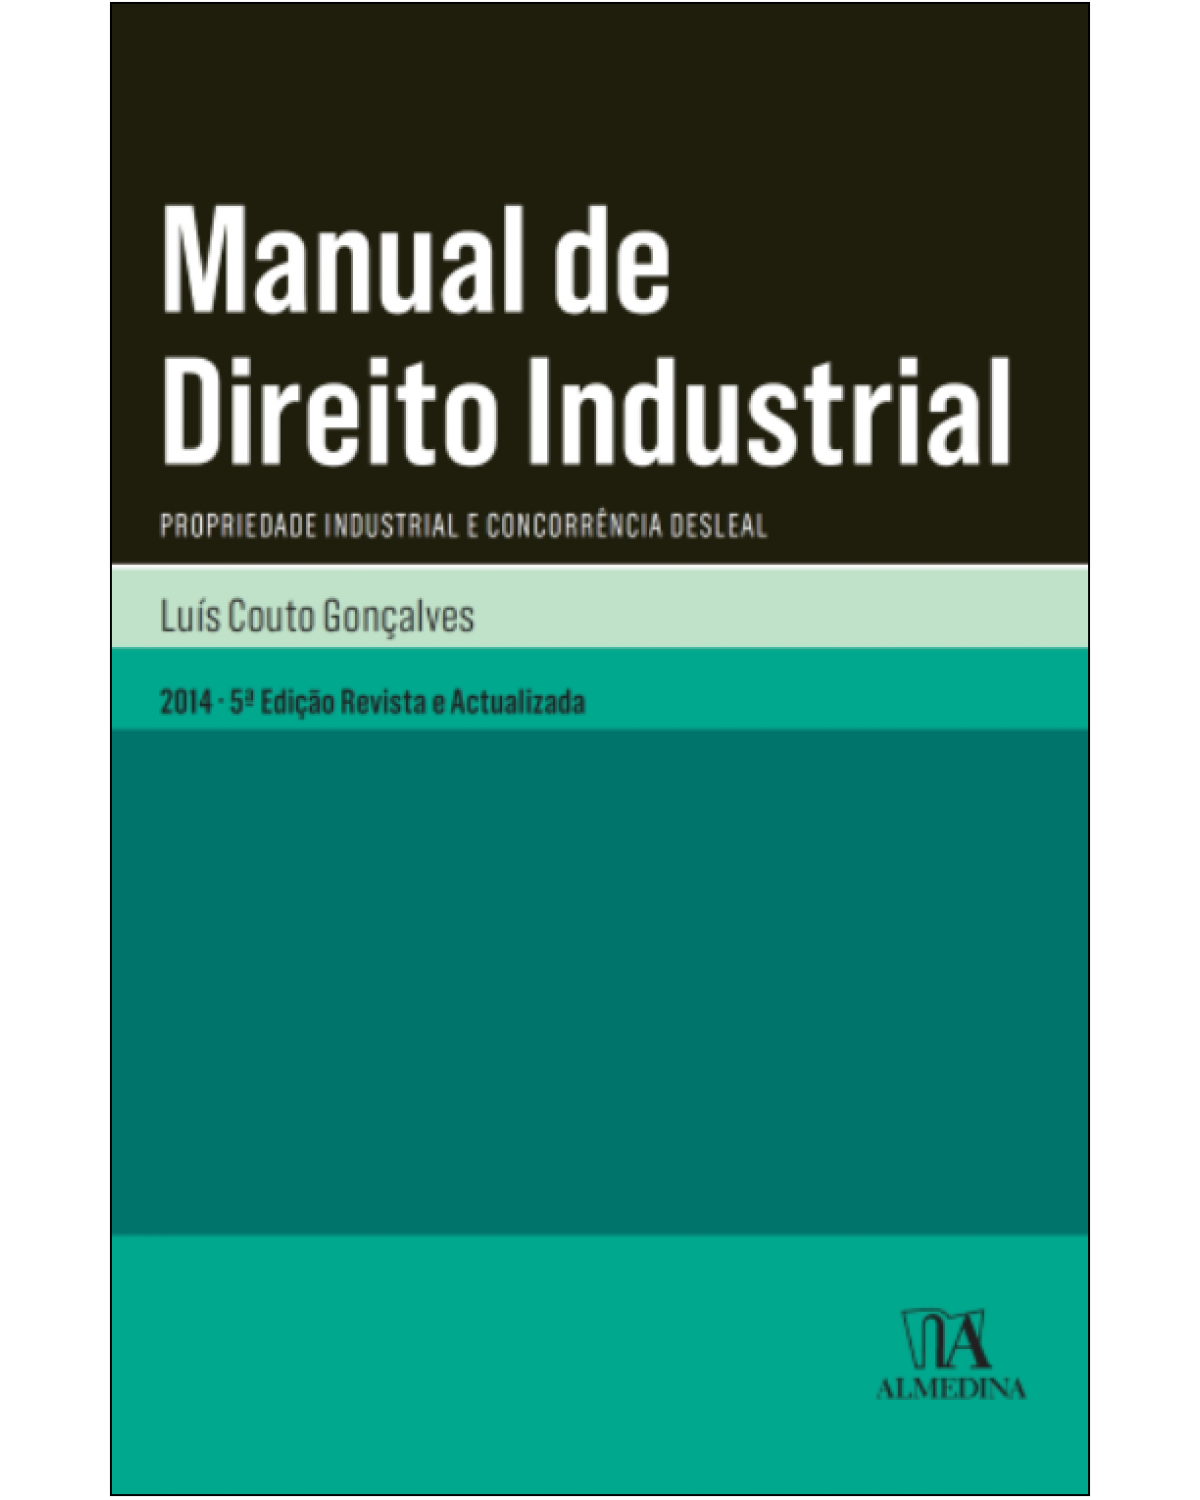 Manual de direito industrial - propriedade industrial e concorrência desleal - 5ª Edição | 2014